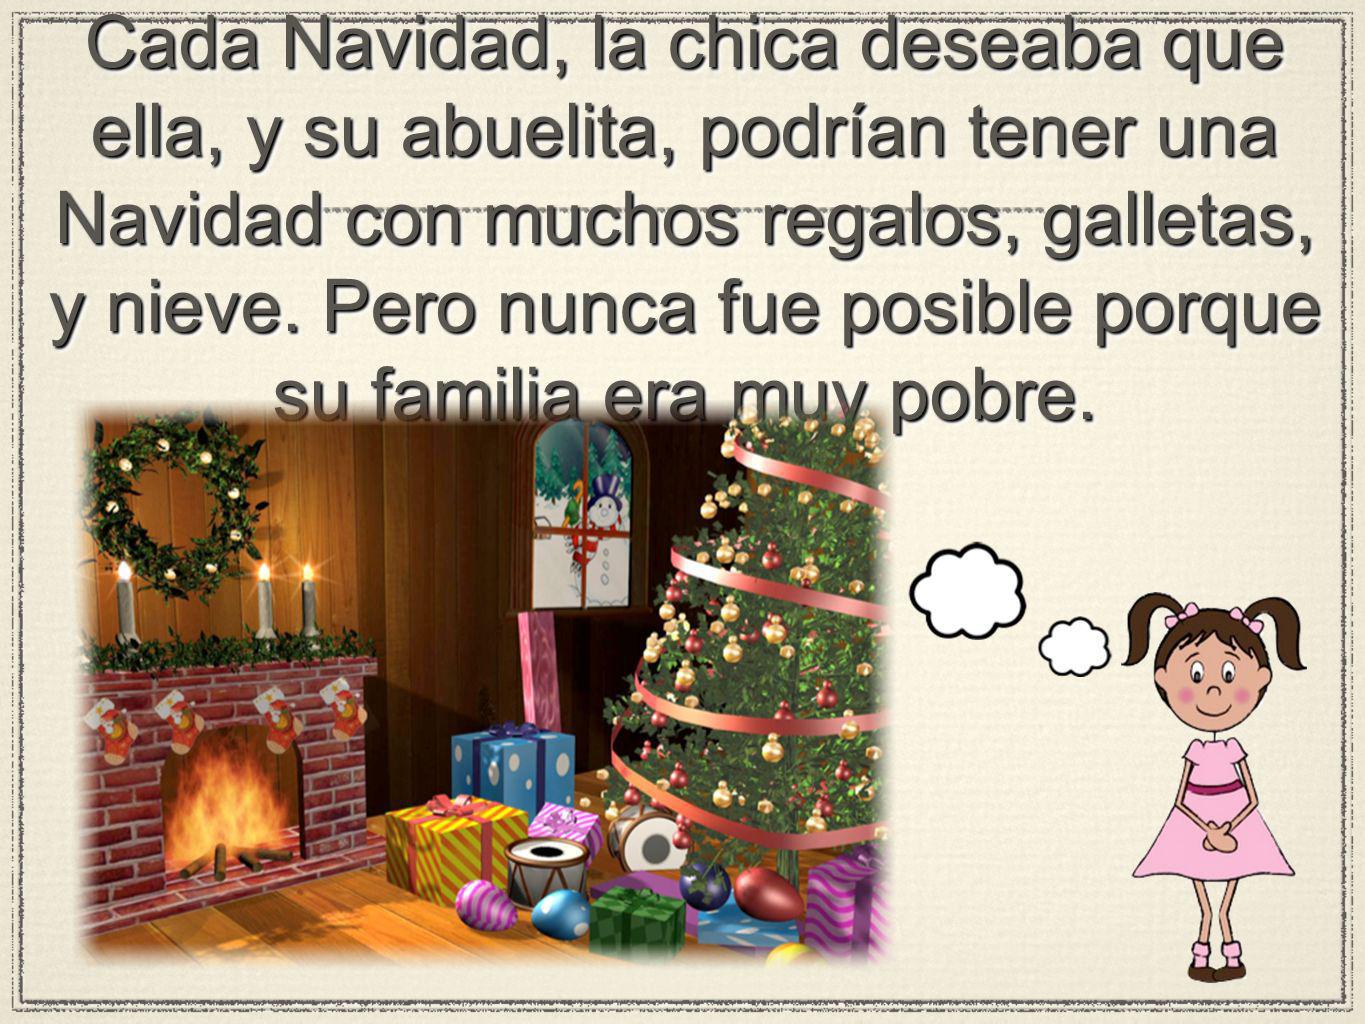 Cada Navidad, la chica deseaba que ella, y su abuelita, podrían tener una Navidad con muchos regalos, galletas, y nieve.